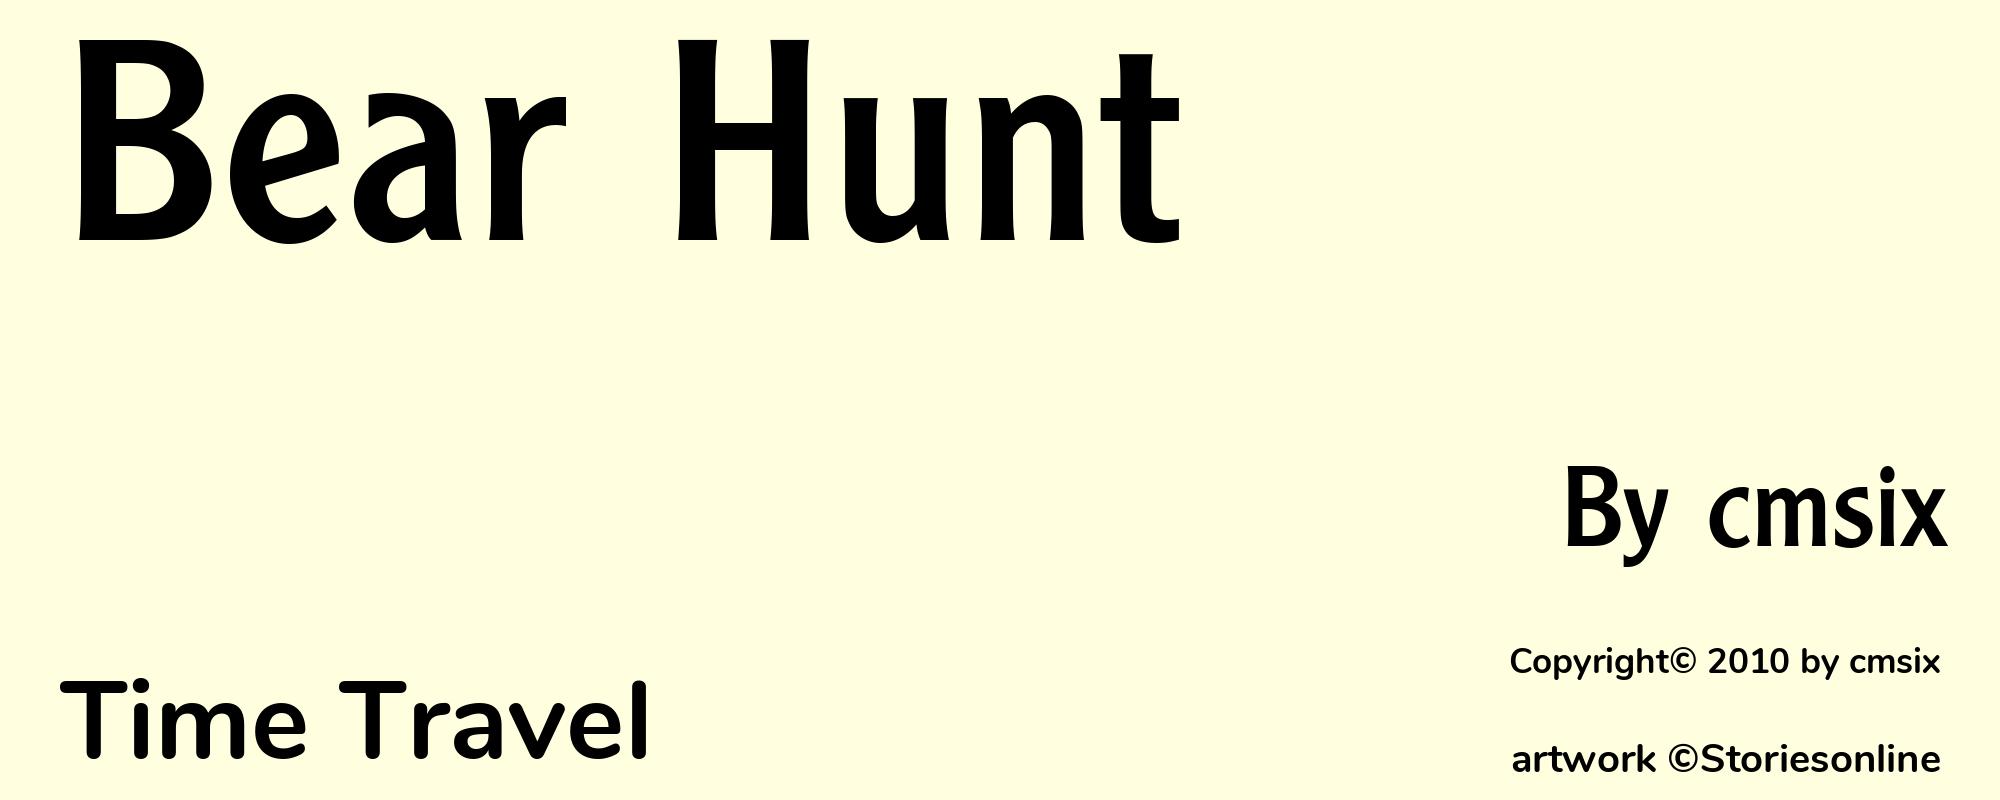 Bear Hunt - Cover